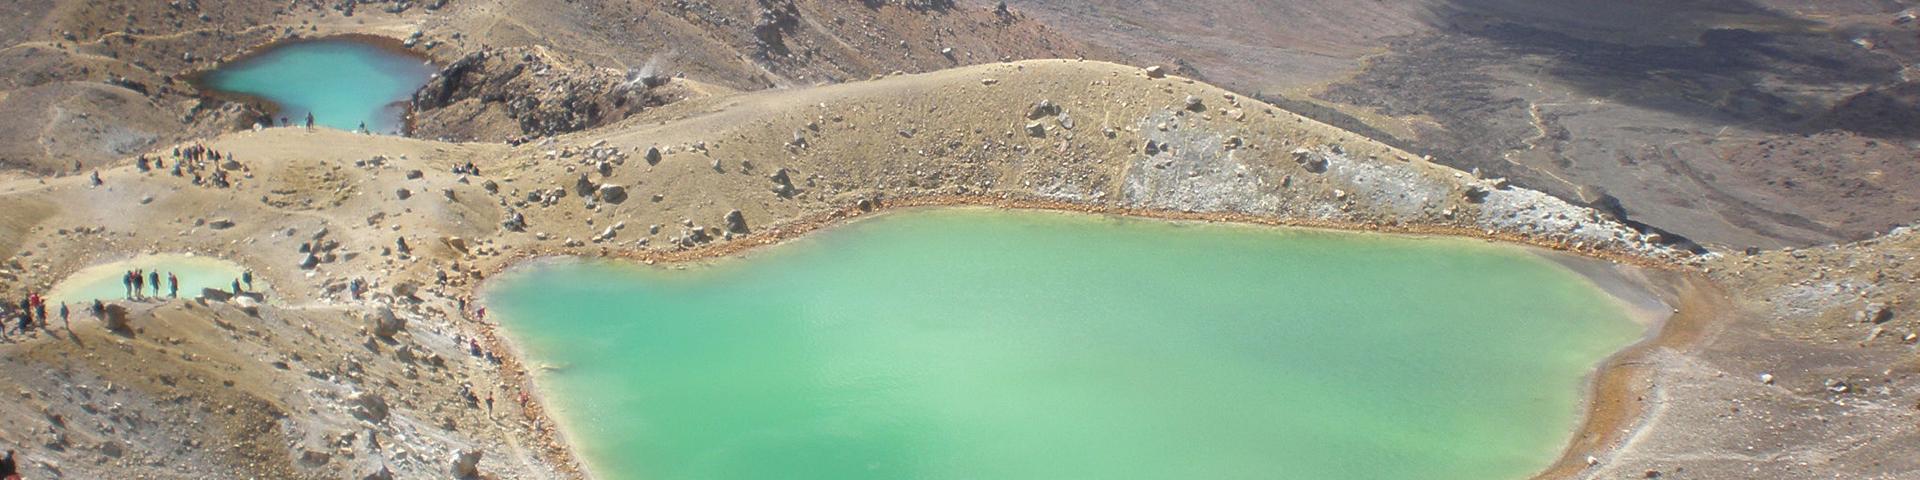 Lacs de couleurs, Nouvelle-Zélande